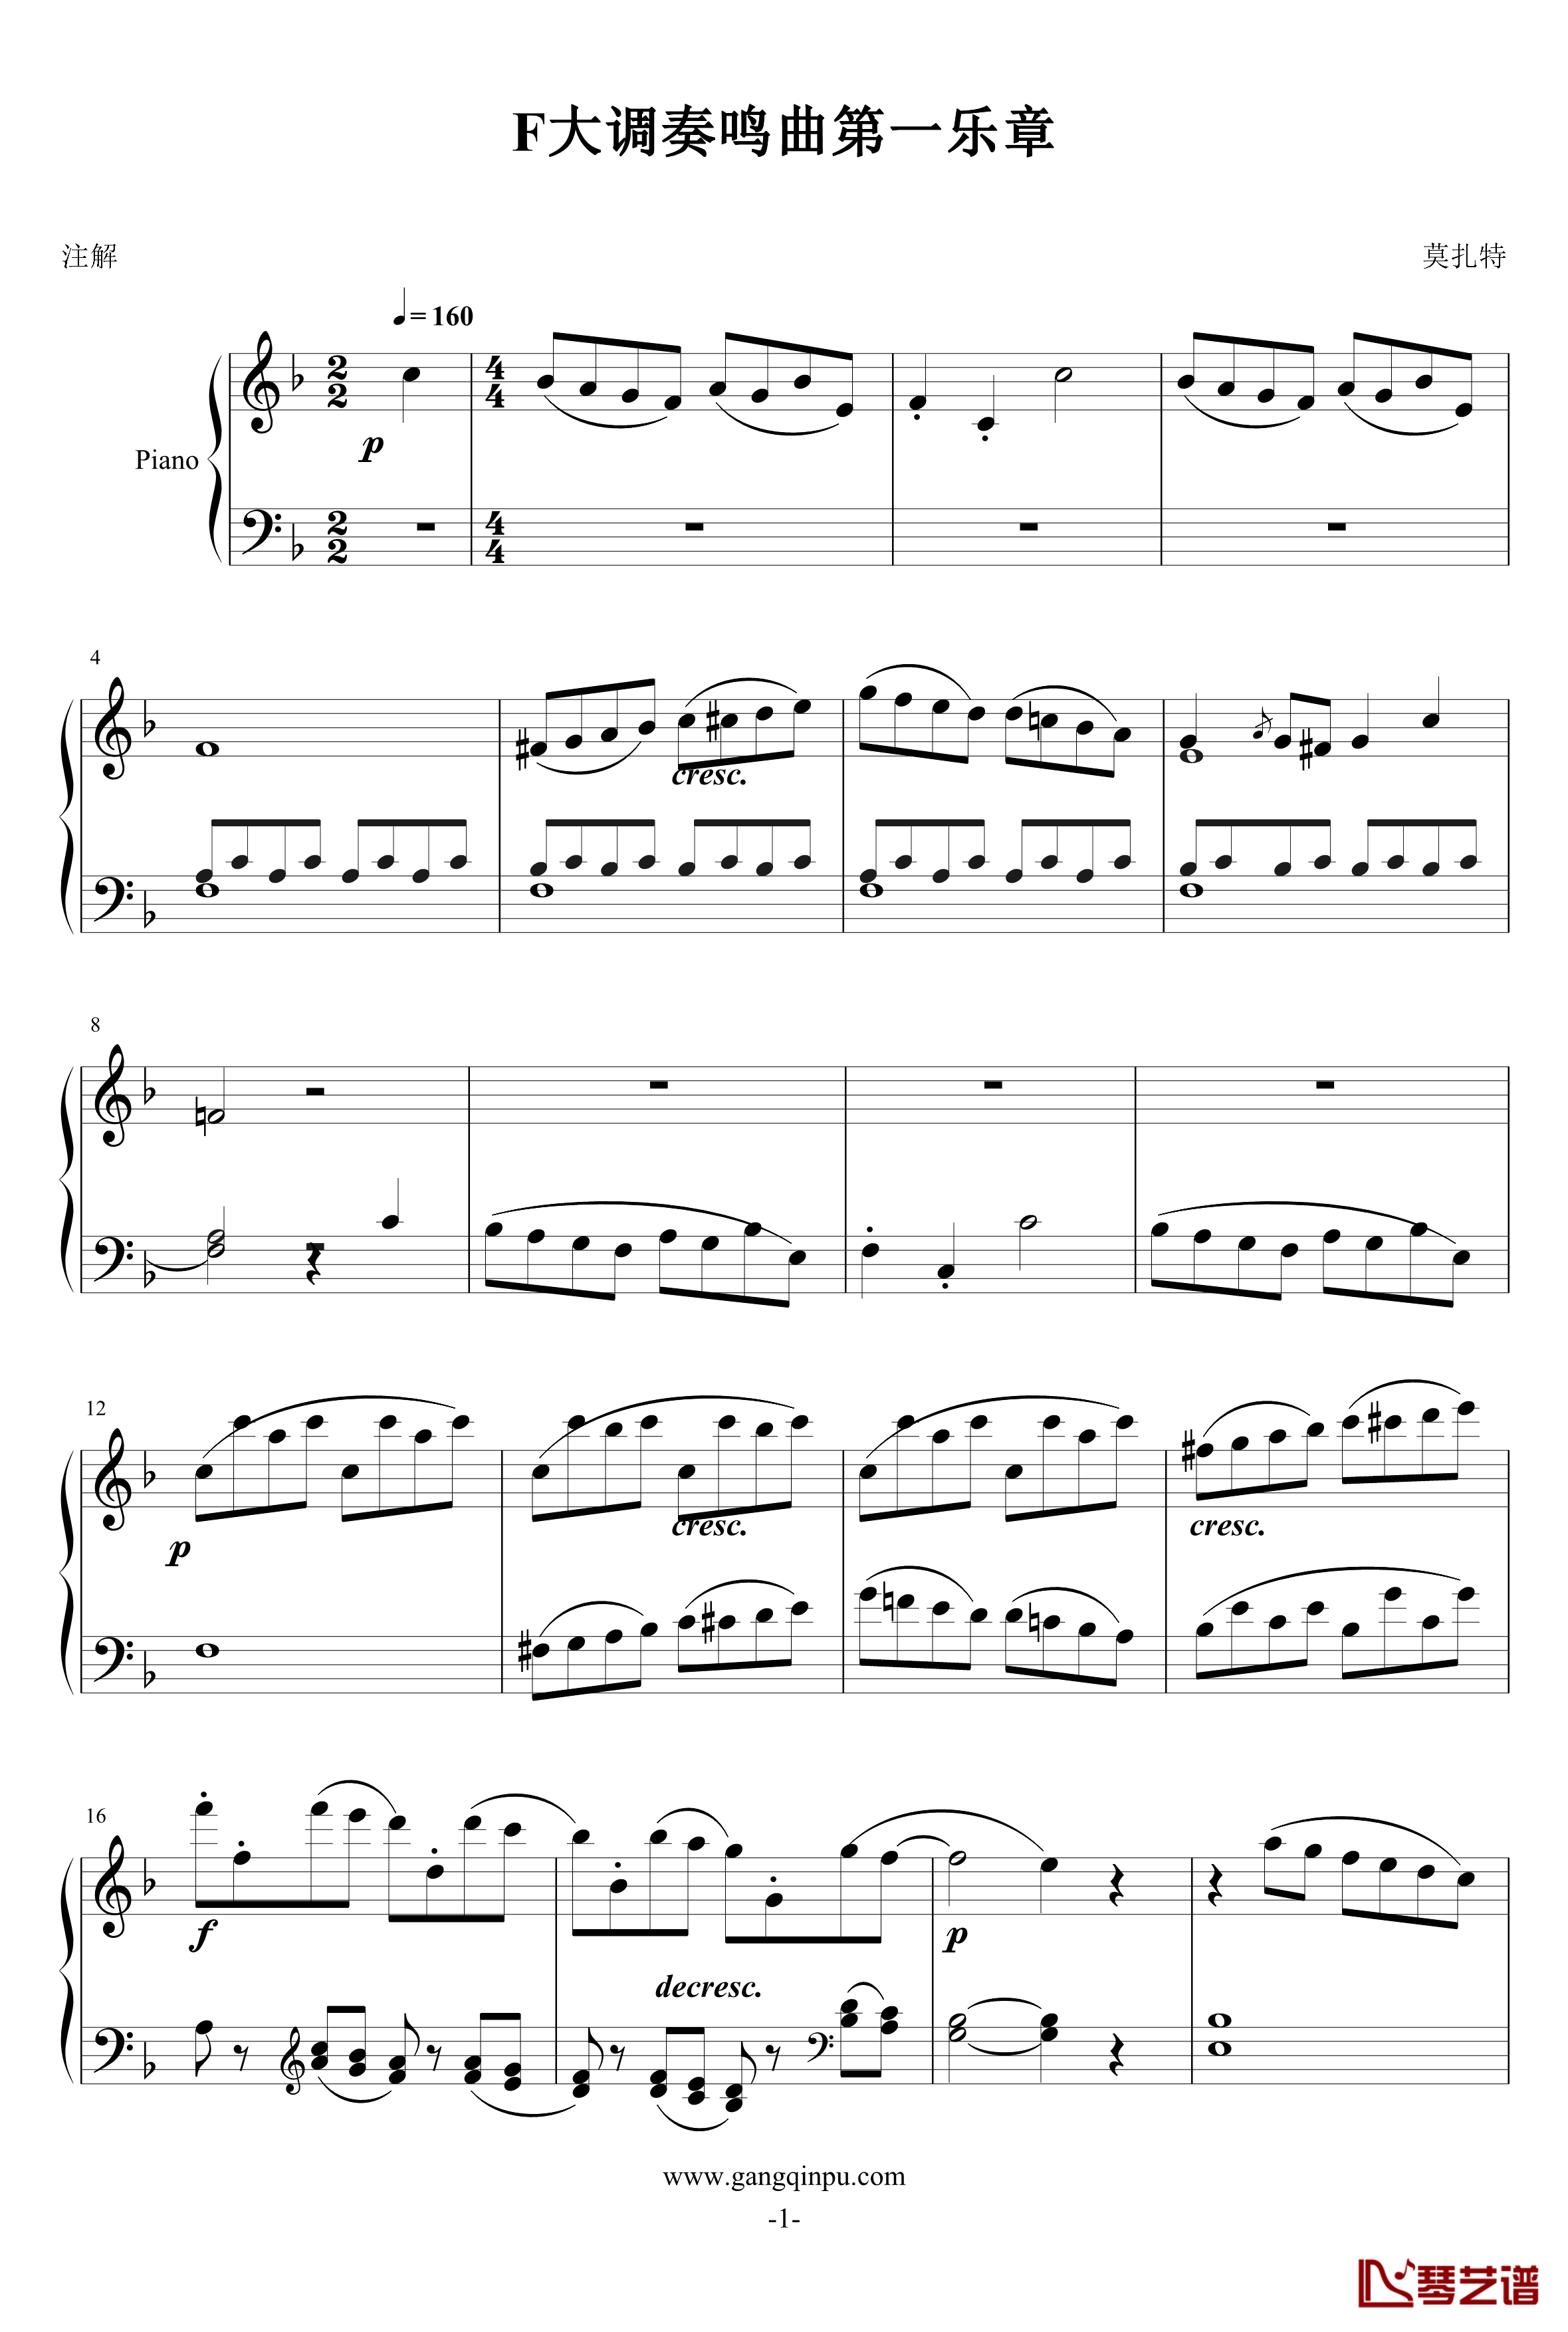 F大调奏鸣曲钢琴谱-莫扎特1